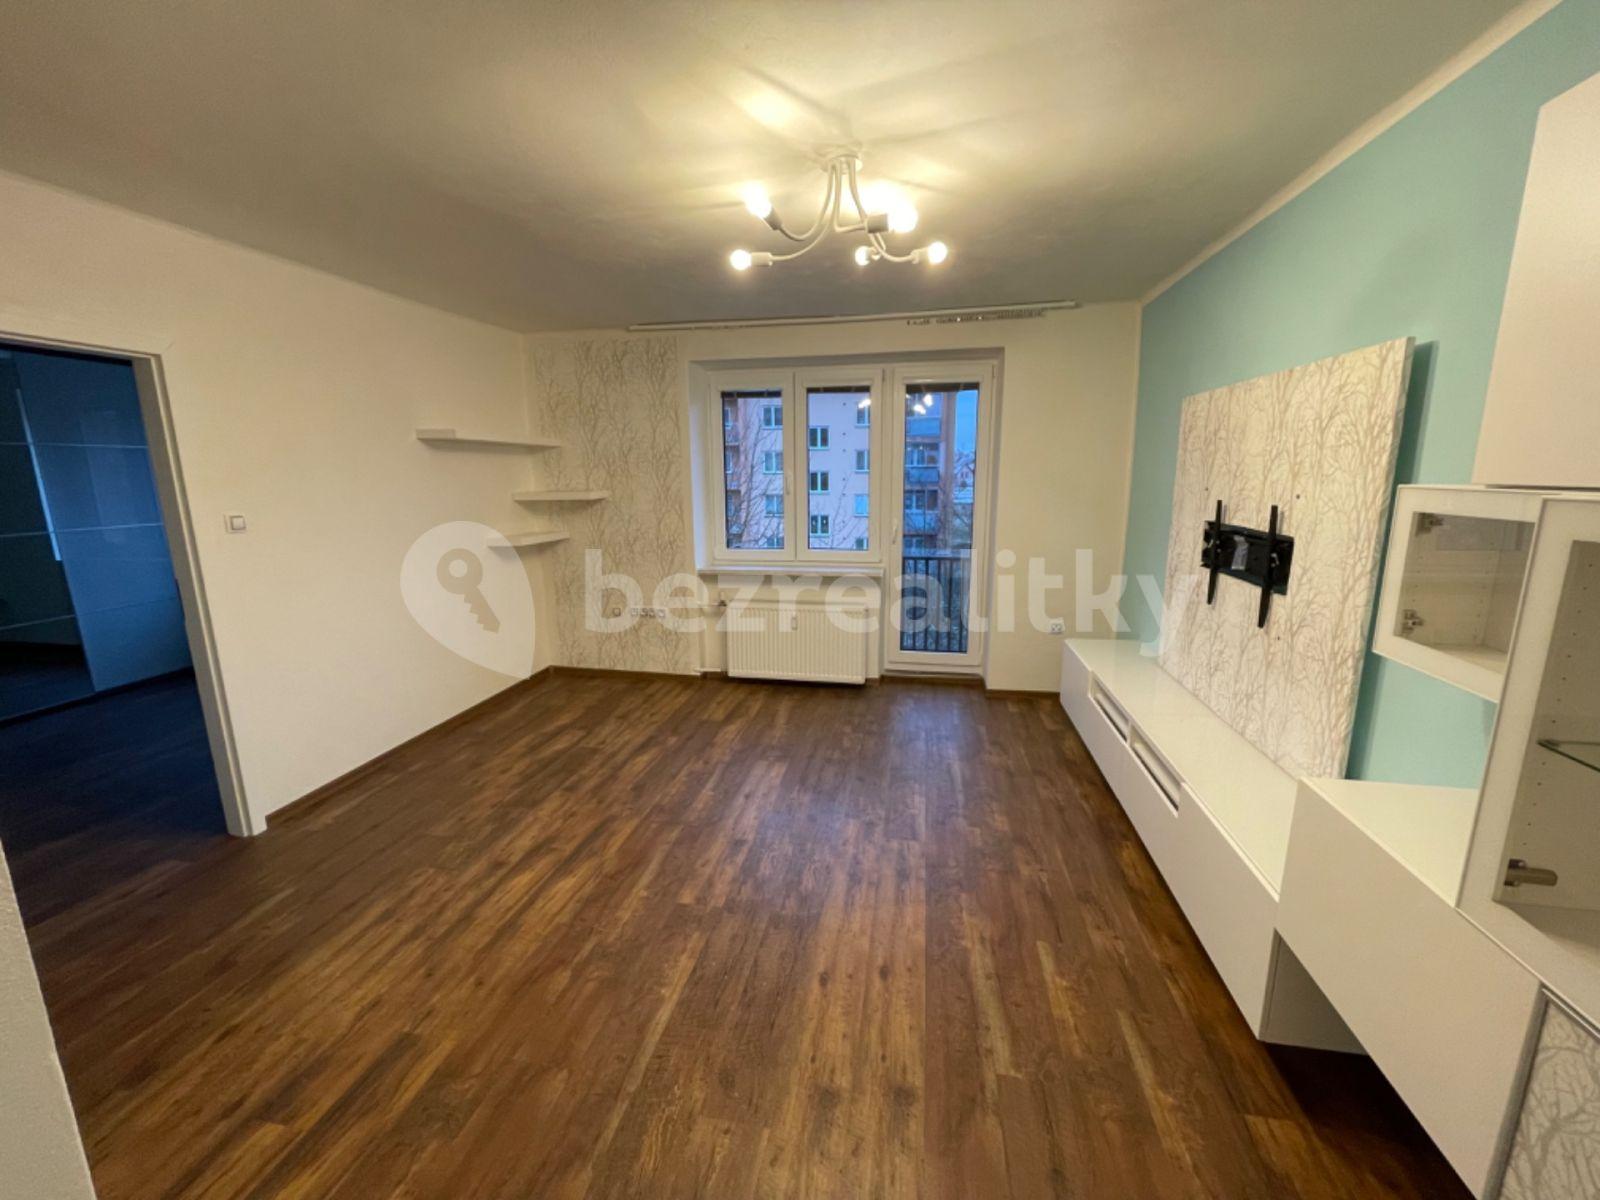 2 bedroom flat to rent, 56 m², V Drážkách, Chotěboř, Vysočina Region